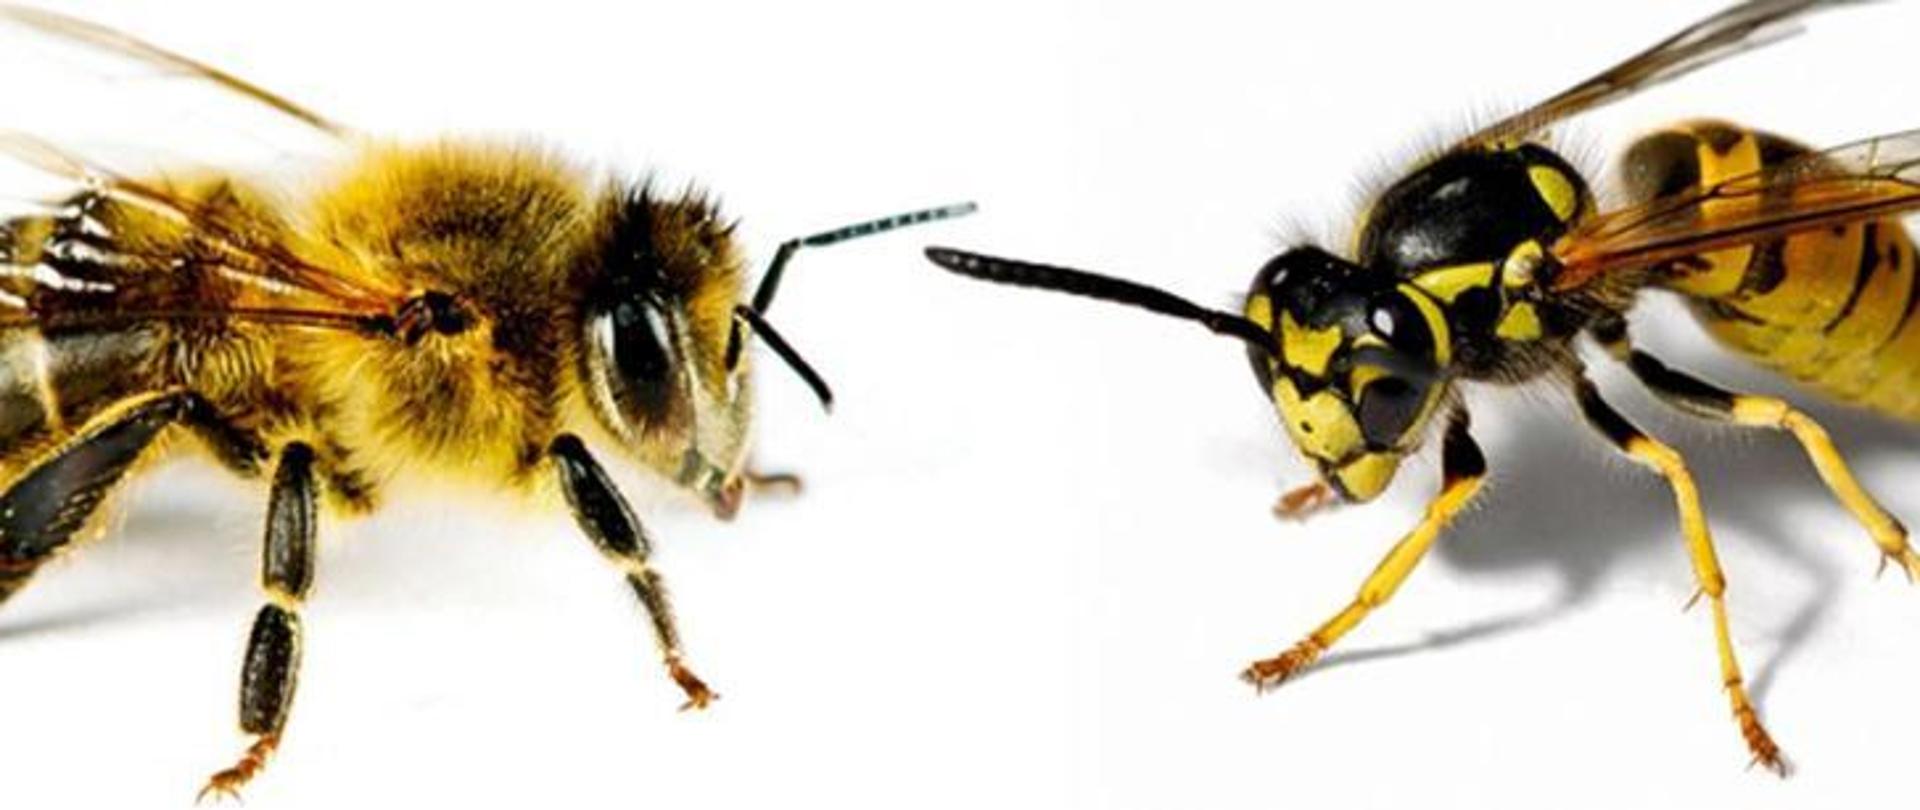 Na zdjęciu widać dwa owady błonkoskrzydłe. Po lewej stronie znajduje się pszczoła po prawej osa. Oba owady posiadają barwę żółto - czarną. Tło zdjęcia jest w kolorze białym.